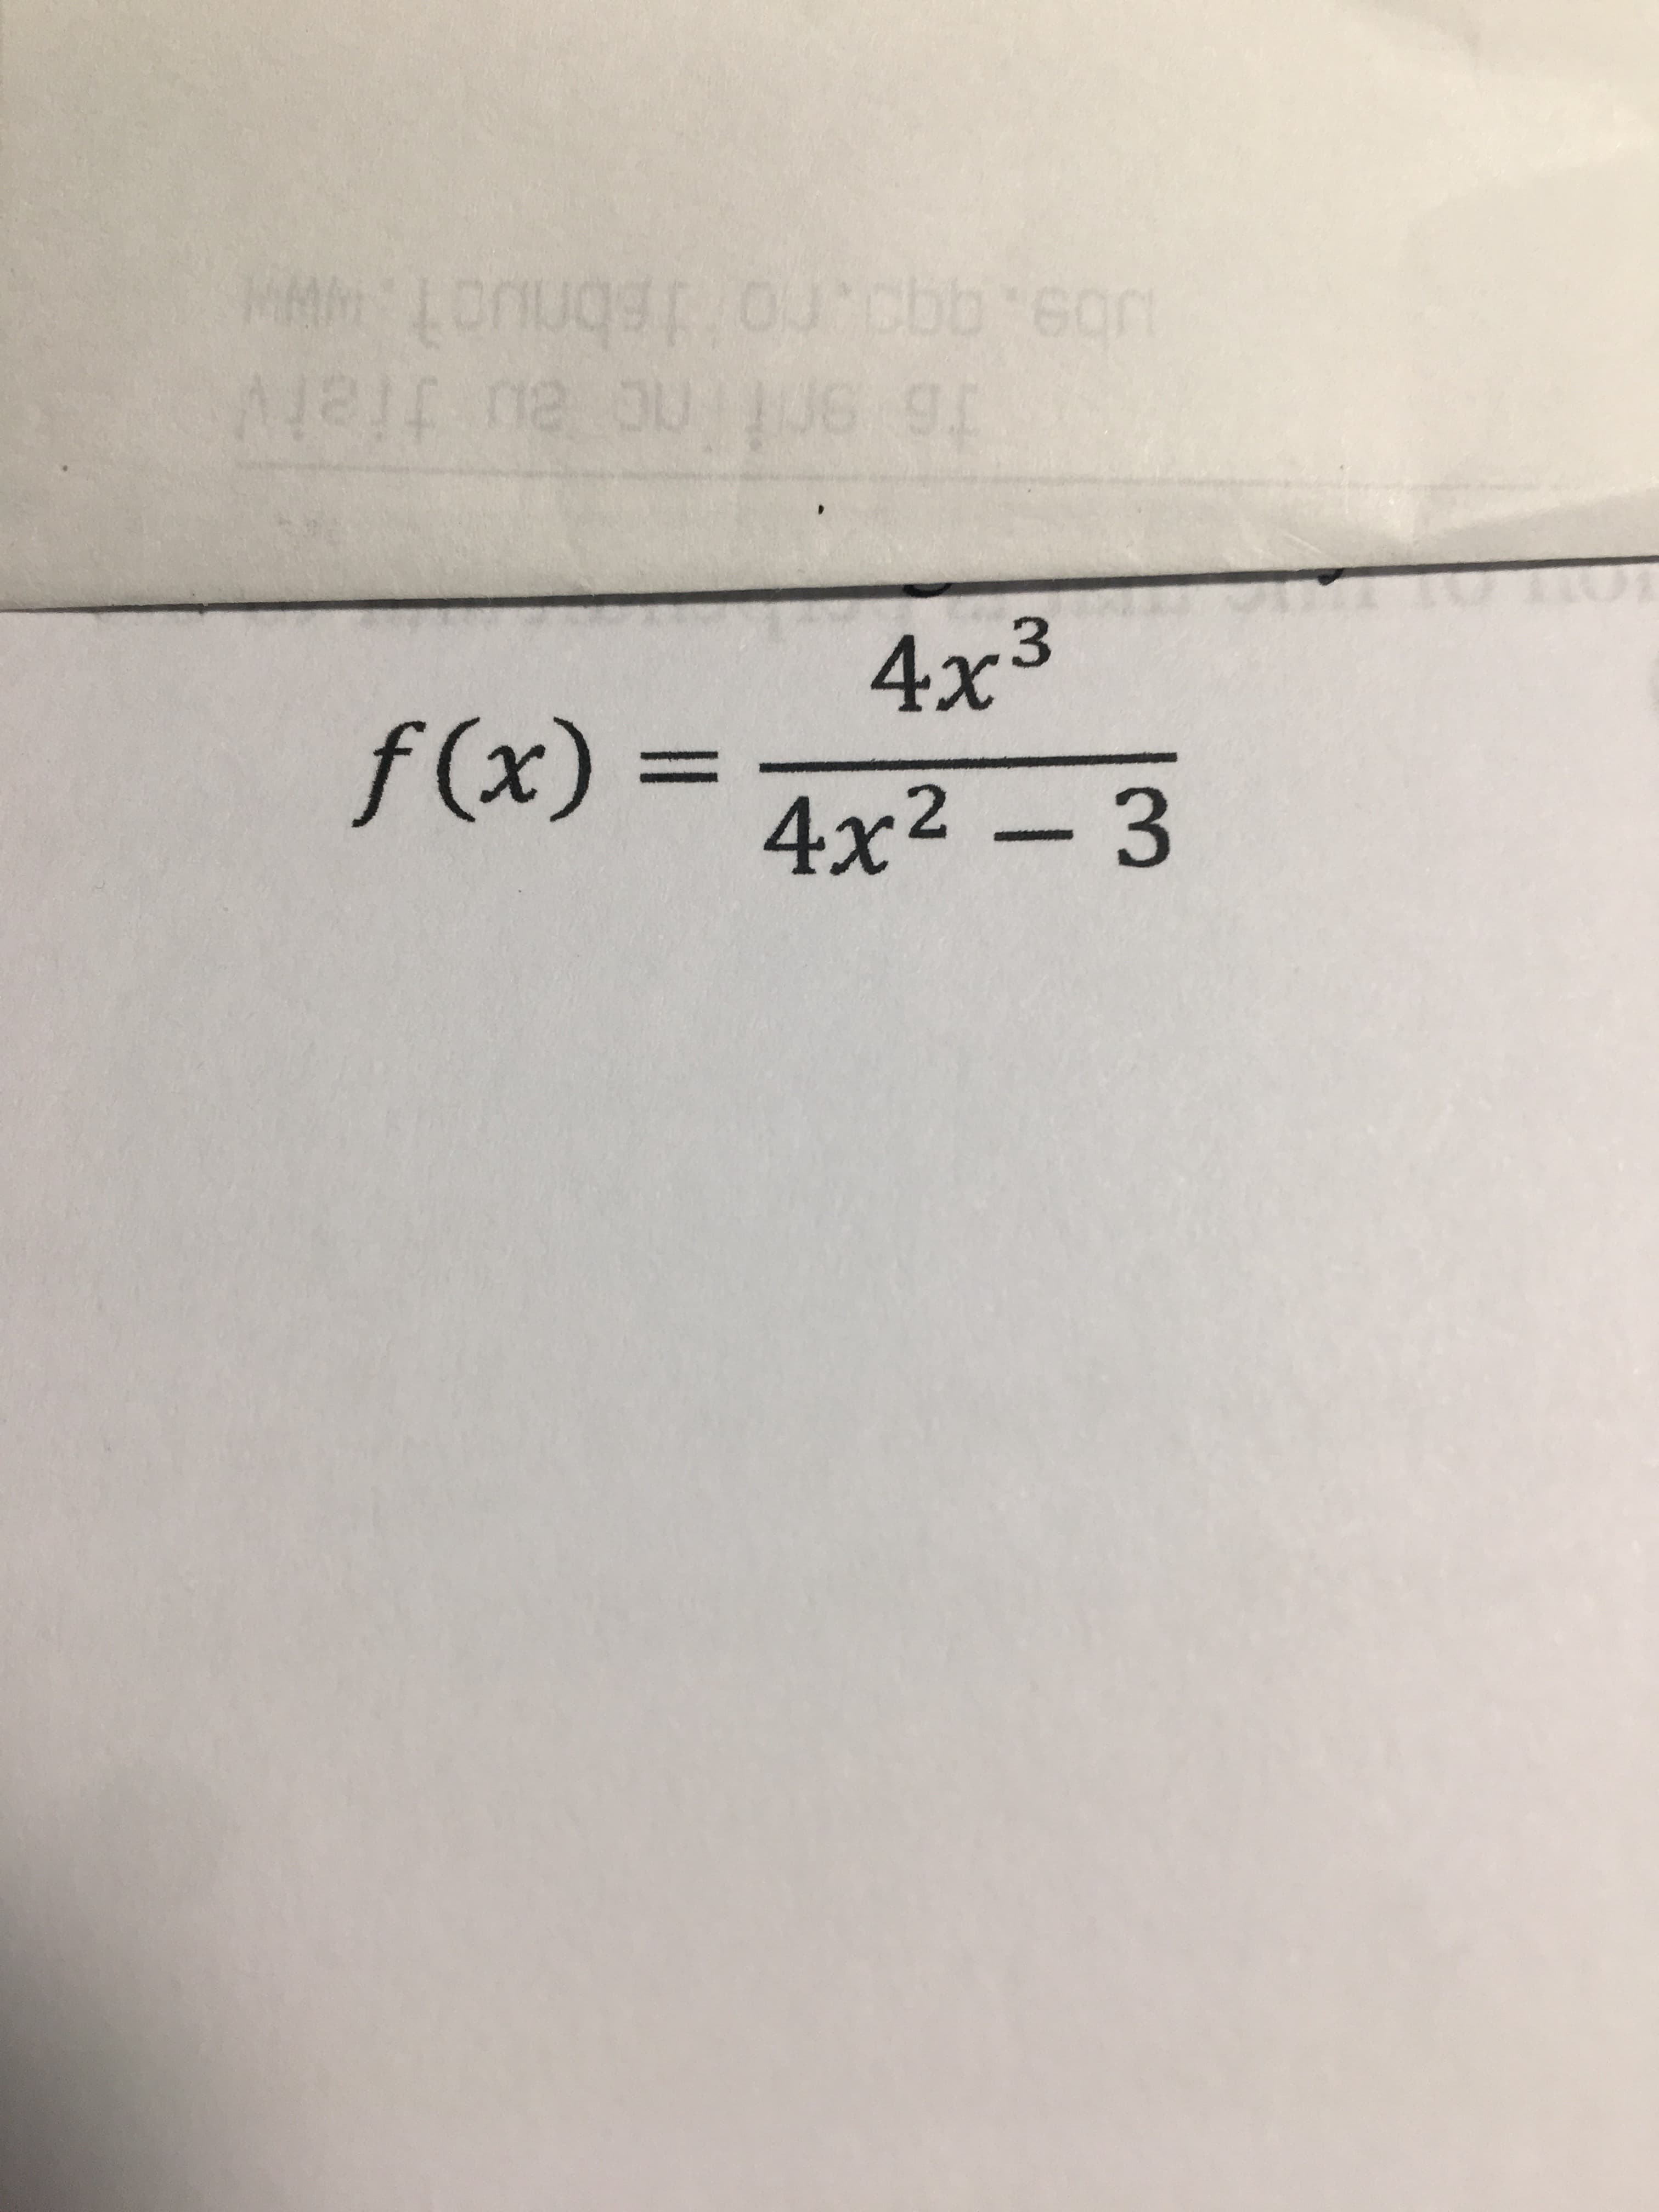 4x3
f(x)%3=
4x2 - 3
